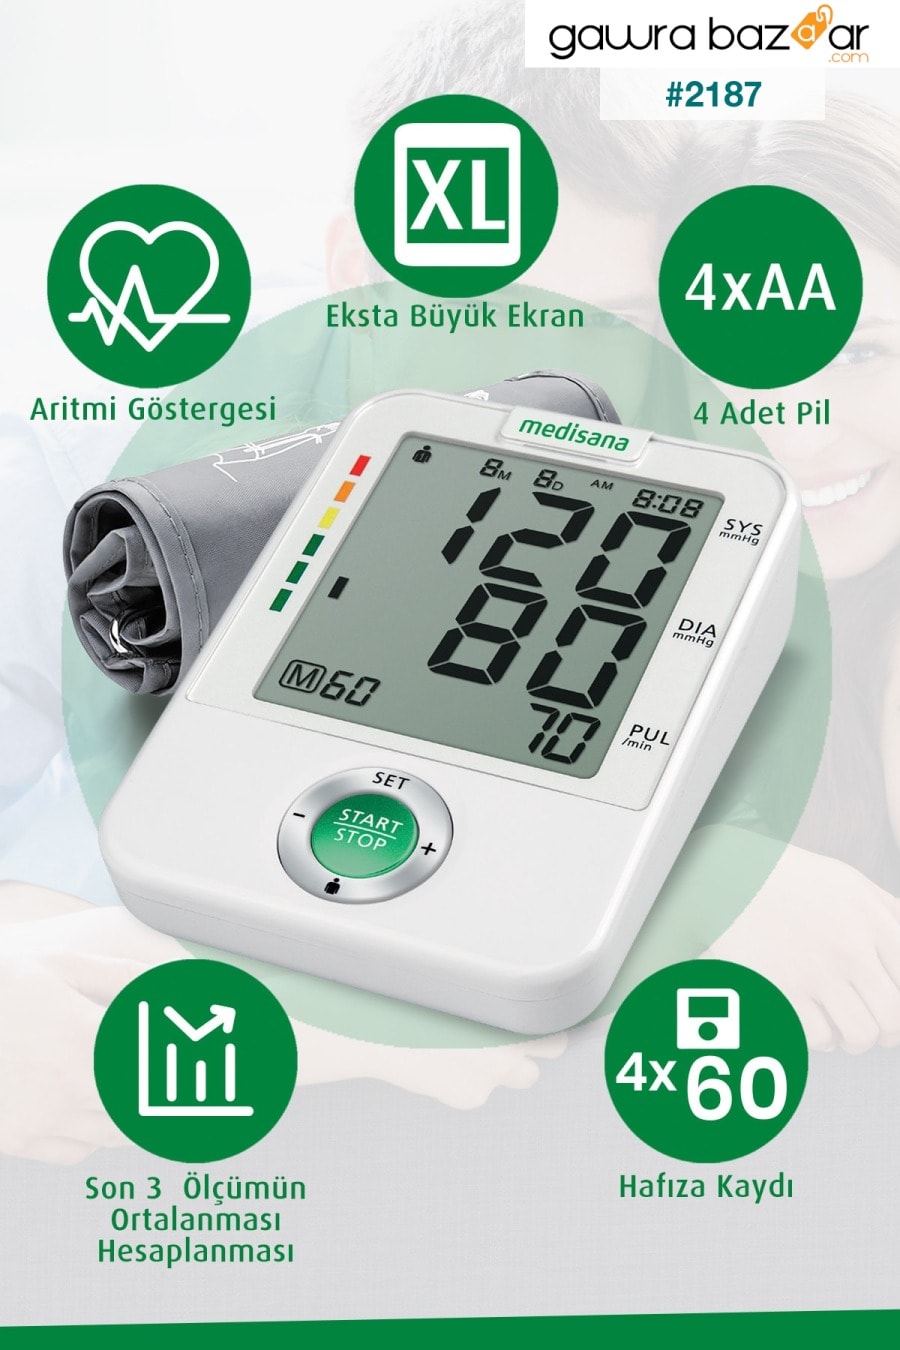 مقياس ضغط دم رقمي بتصميم ألماني مع شاشة عرض كبيرة وكفة عريضة في أعلى الذراع medisana 1